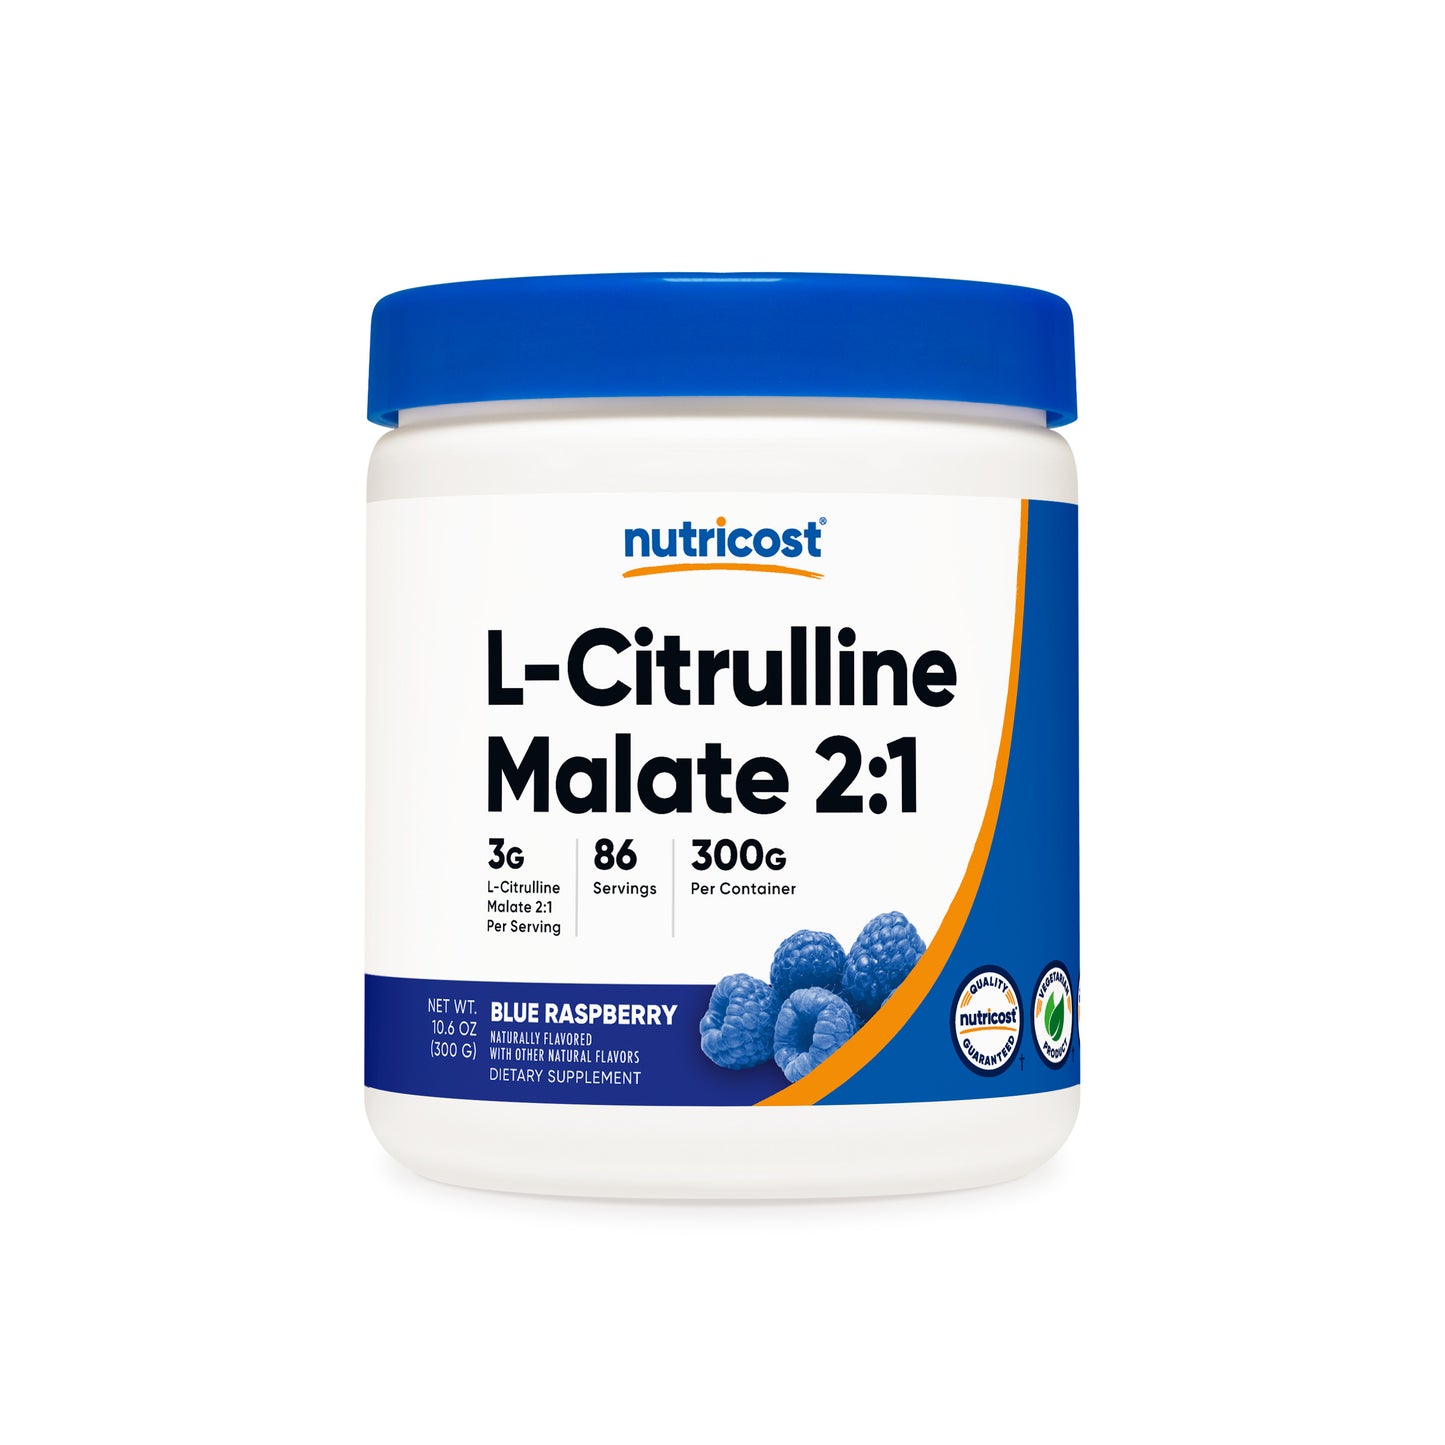 Nutricost L-Citrulline Malate (2:1) Powder